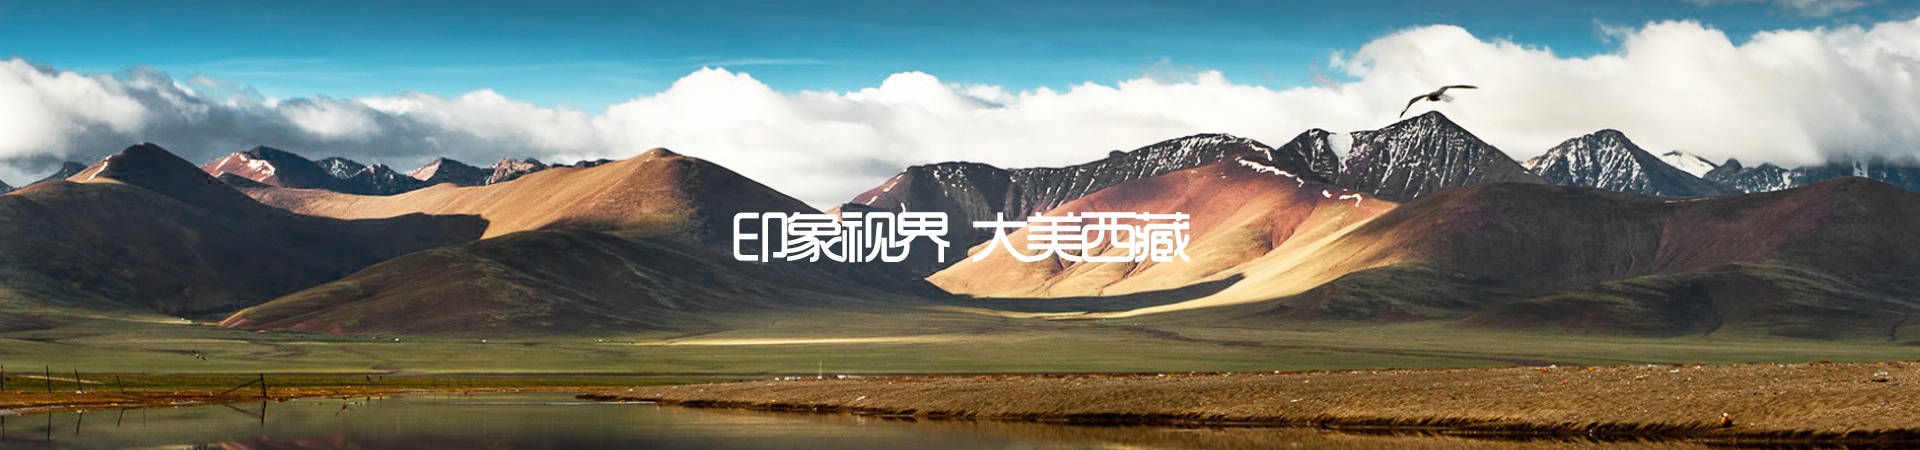 印象视界西藏旅游响应式网站建设